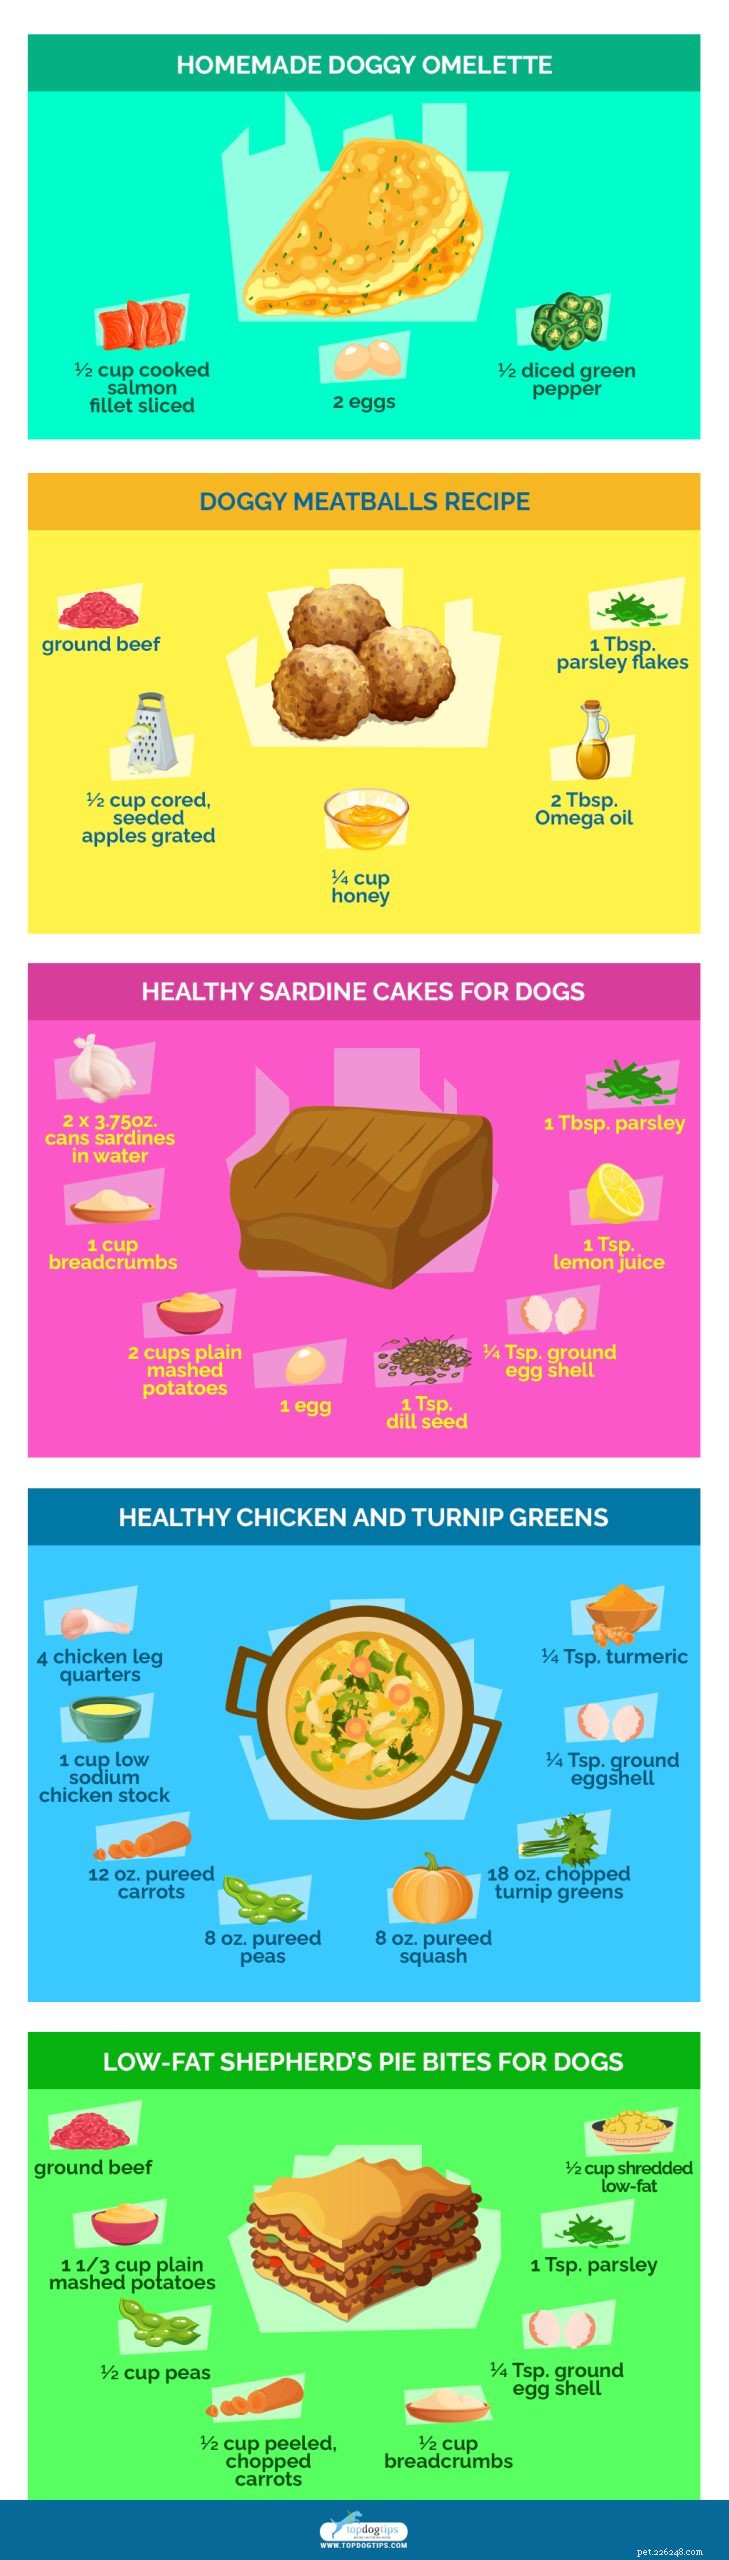 20 nejzdravějších domácích receptů na krmivo pro psy